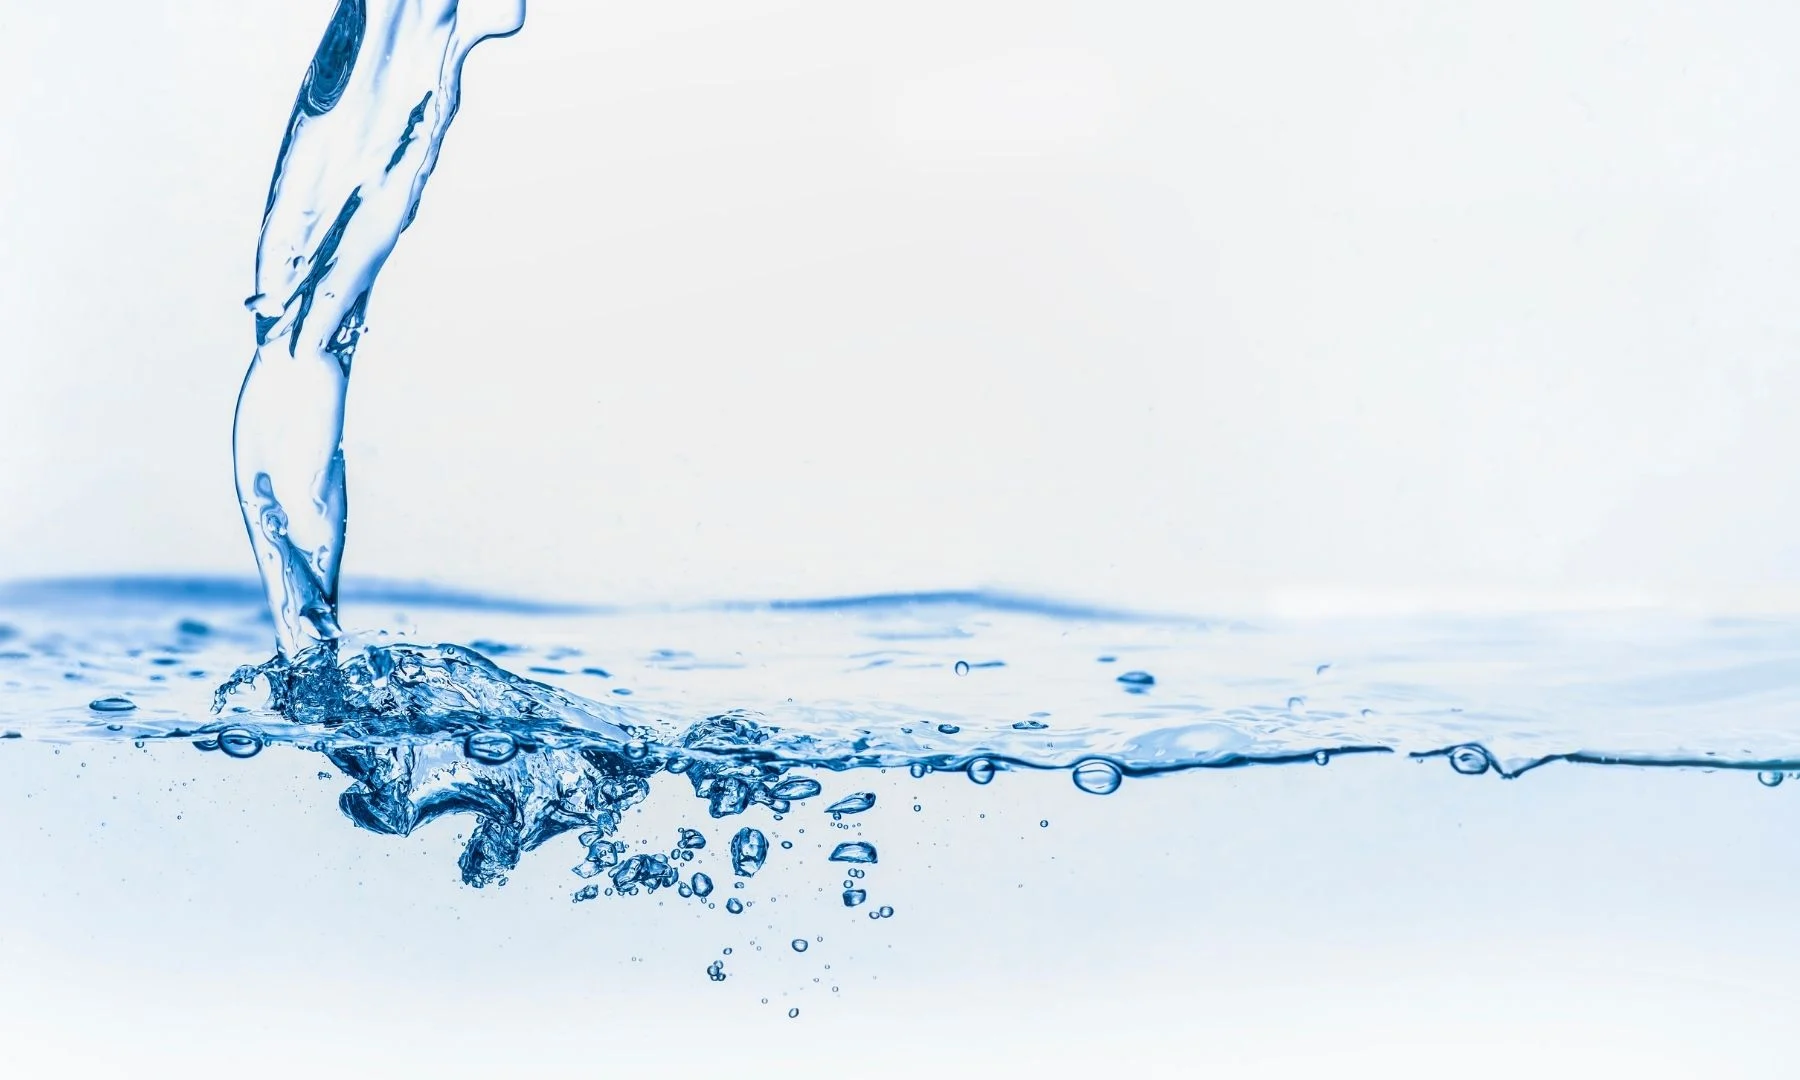 Agrosuper lanza el fondo concursable "Impulsa agua" en Chile